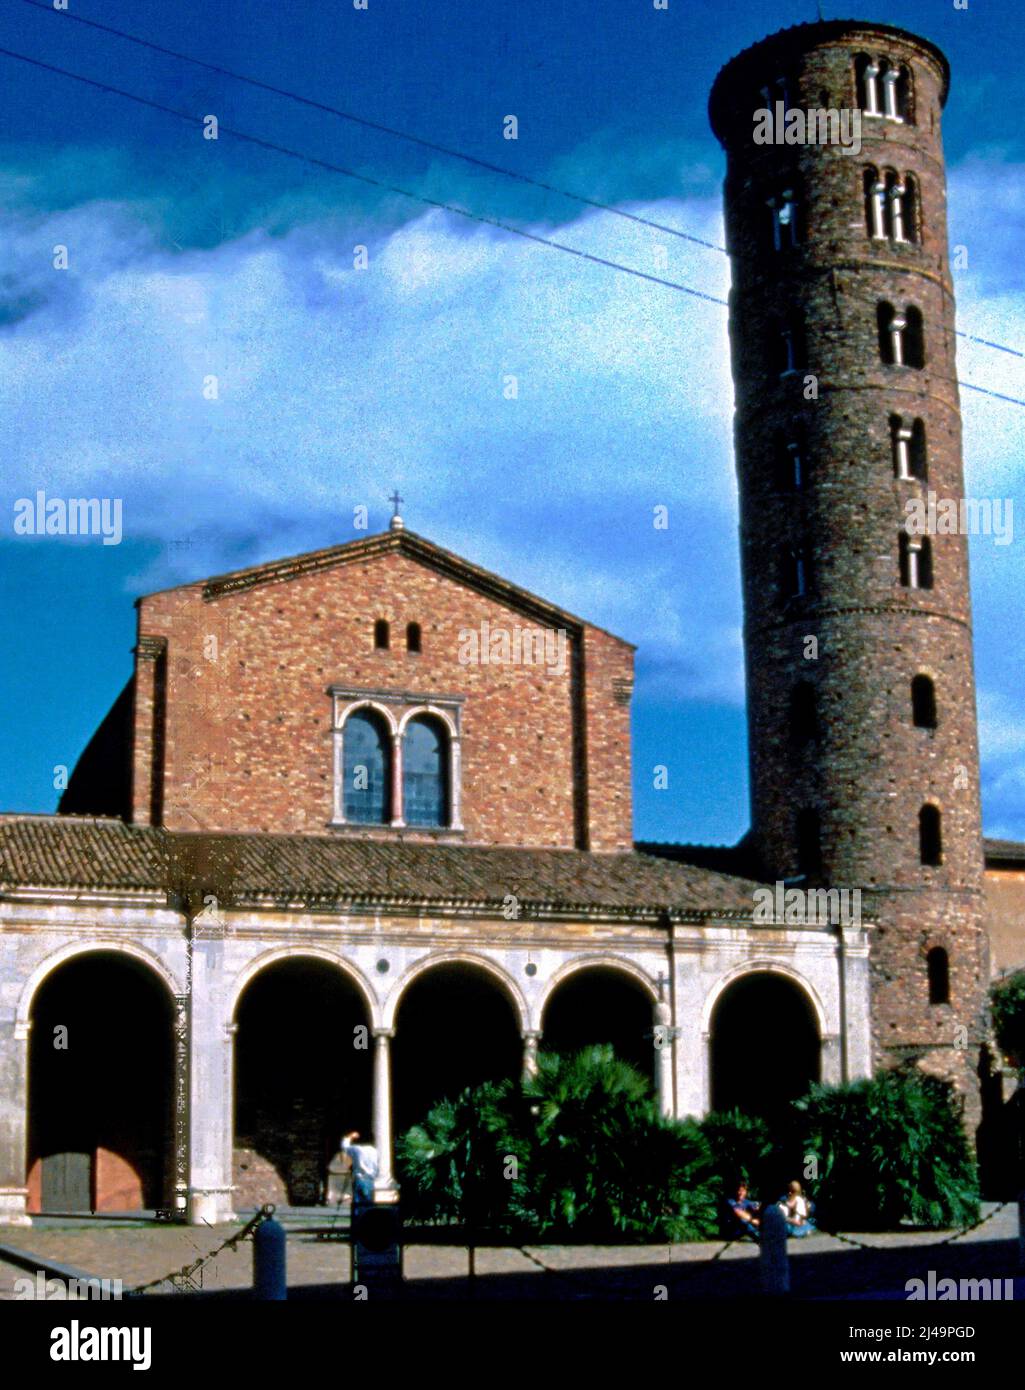 Basilica di Sant Apollinare Nuovo, Ravenna, Italy. Stock Photo